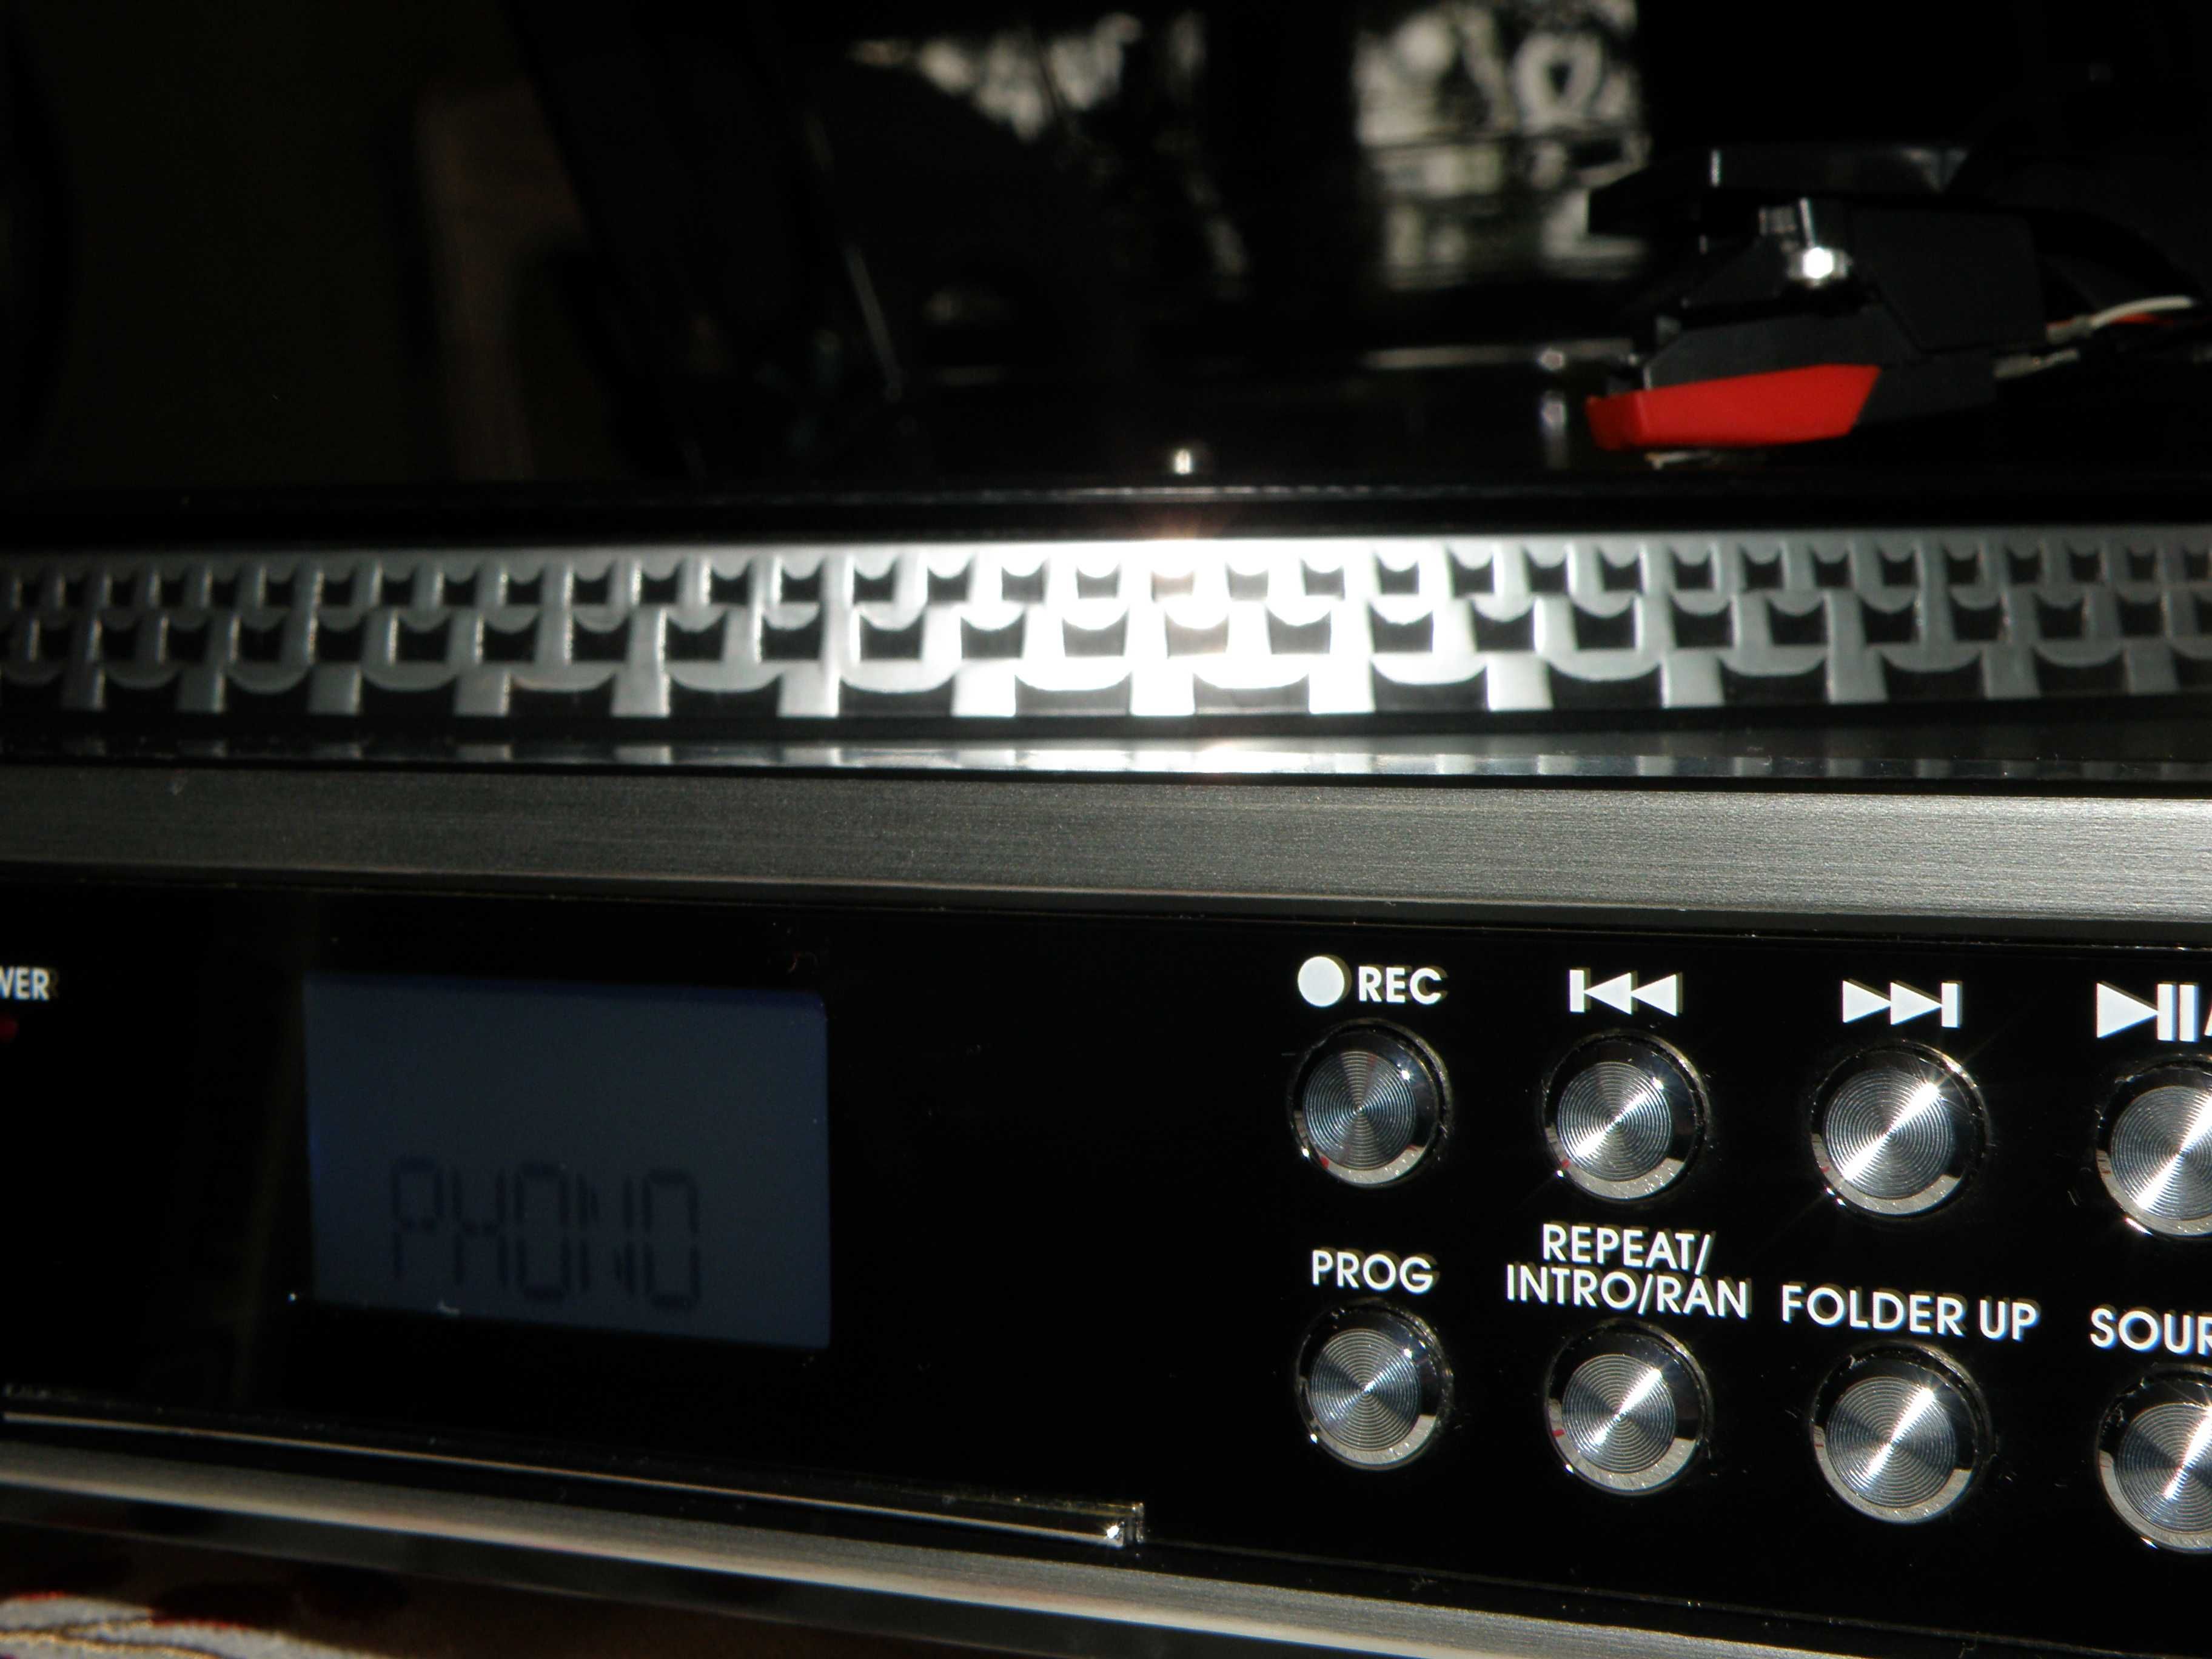 Gramofon "AEG": MC 4420 USB/SD/MMC/MP3 idealny do dygitalizowania